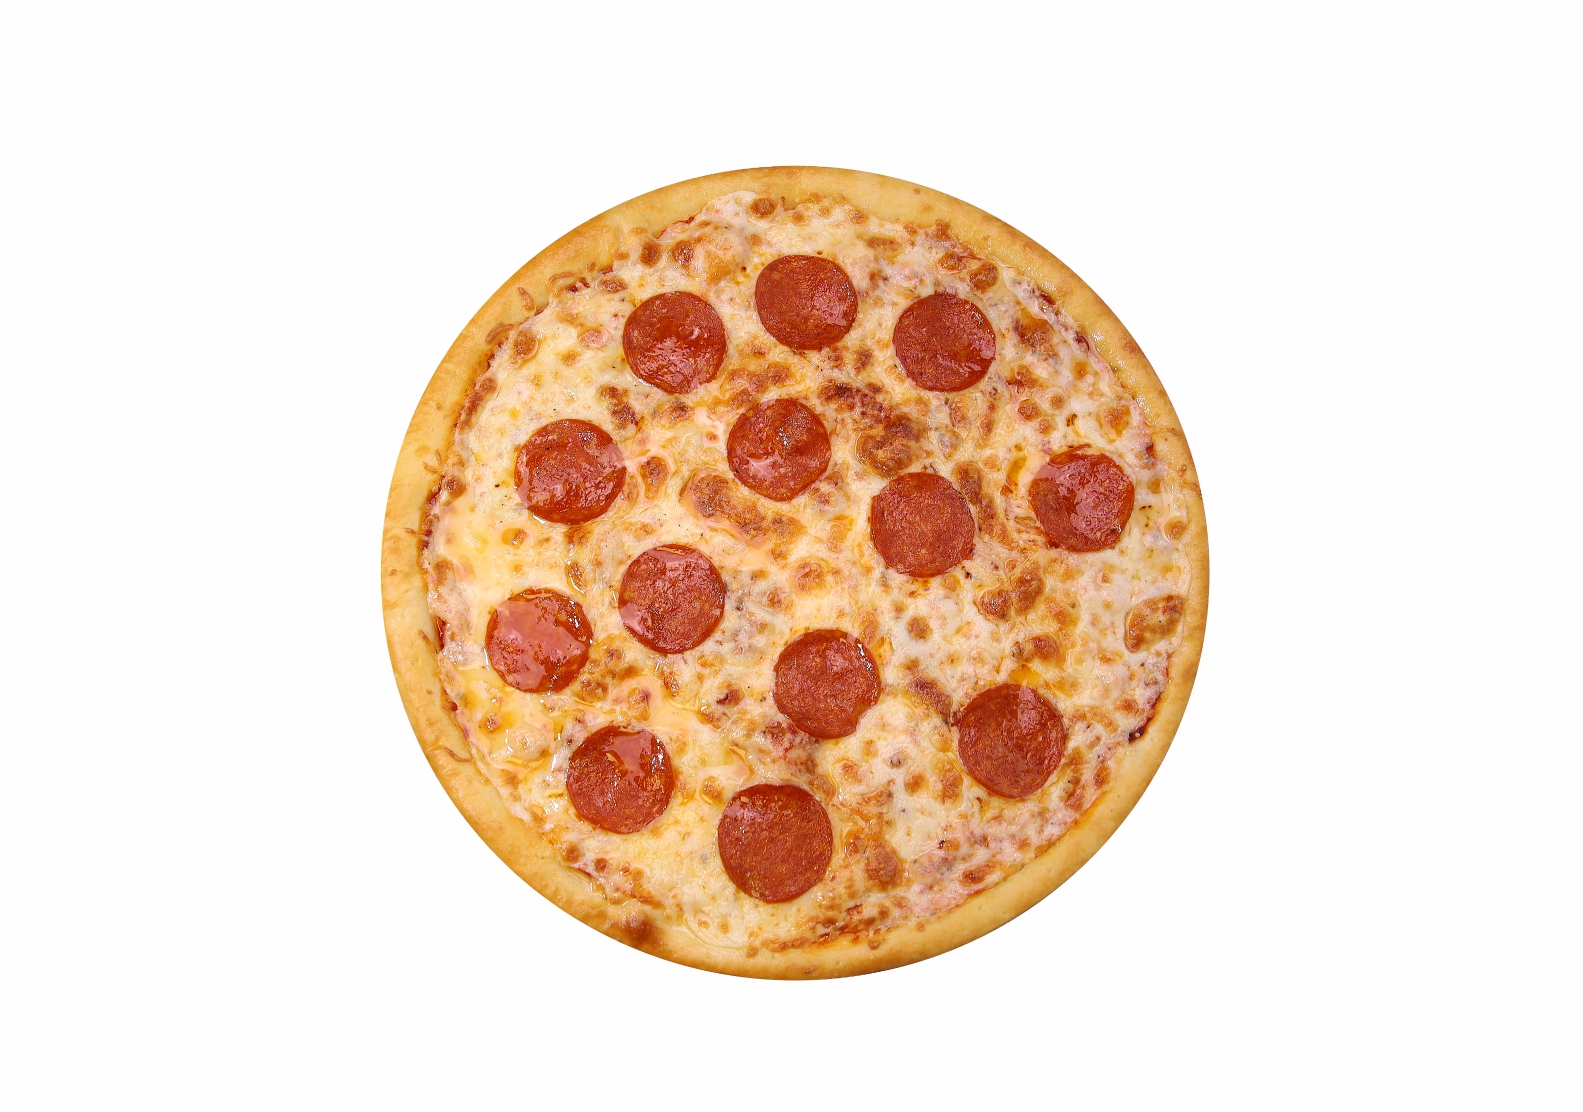 технологическая карта приготовления пиццы пепперони фото 82